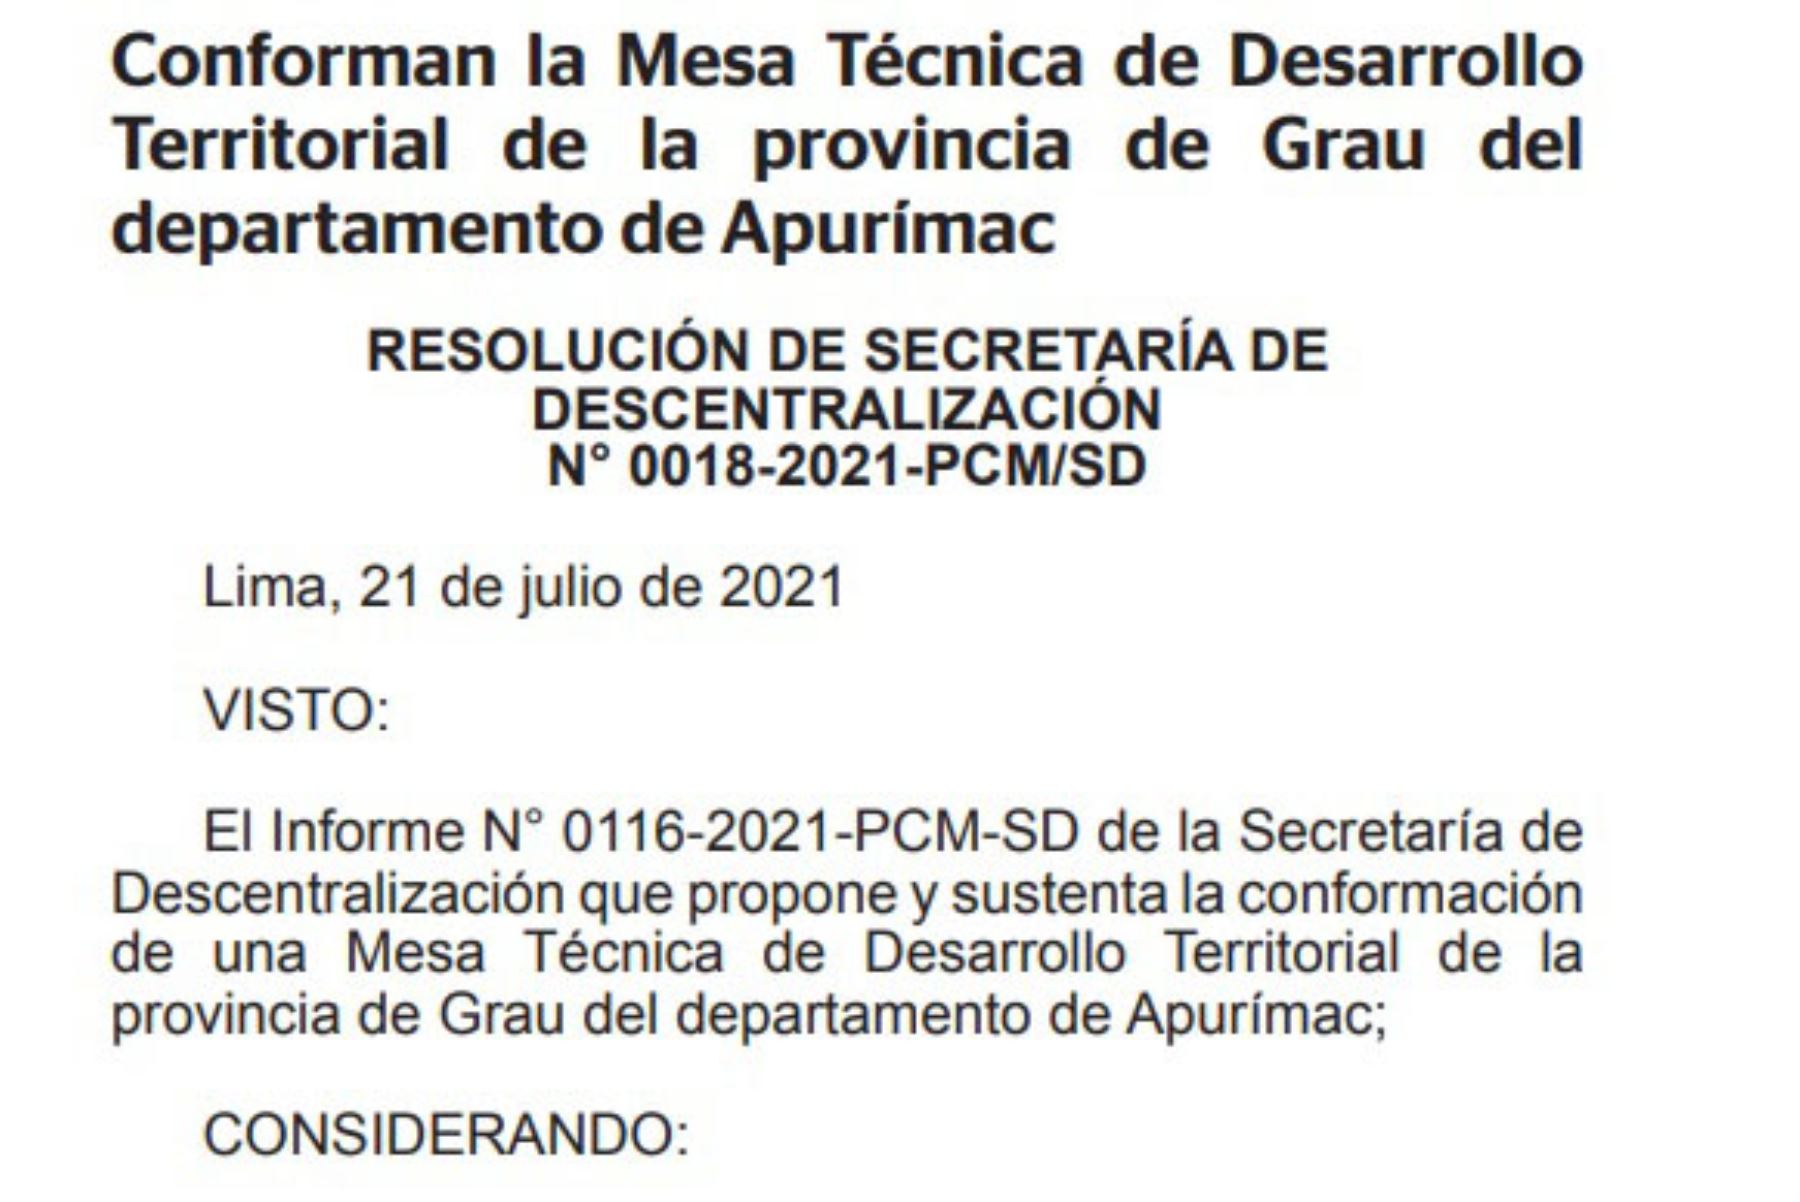 Crean Mesas Técnicas de Desarrollo Territorial en provincias Grau-Apurímac y Carabaya-Puno